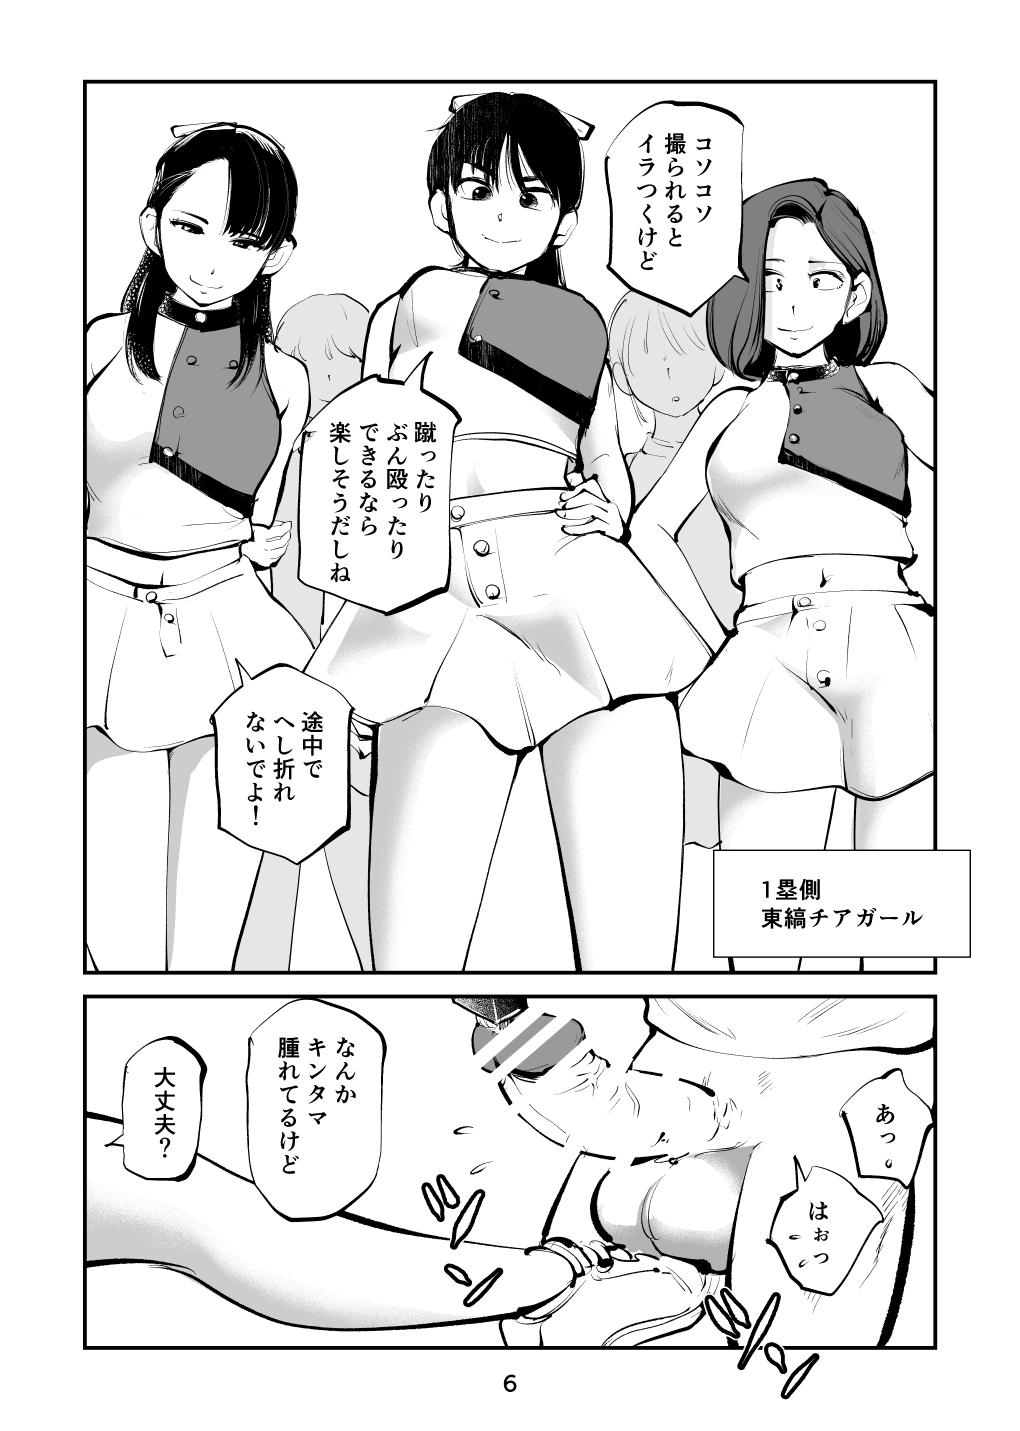 Banheiro Kinkeri Cheer Girl VS Tosatsuma Shakai Hito Cheer Girl-hen - Original Amador - Page 6